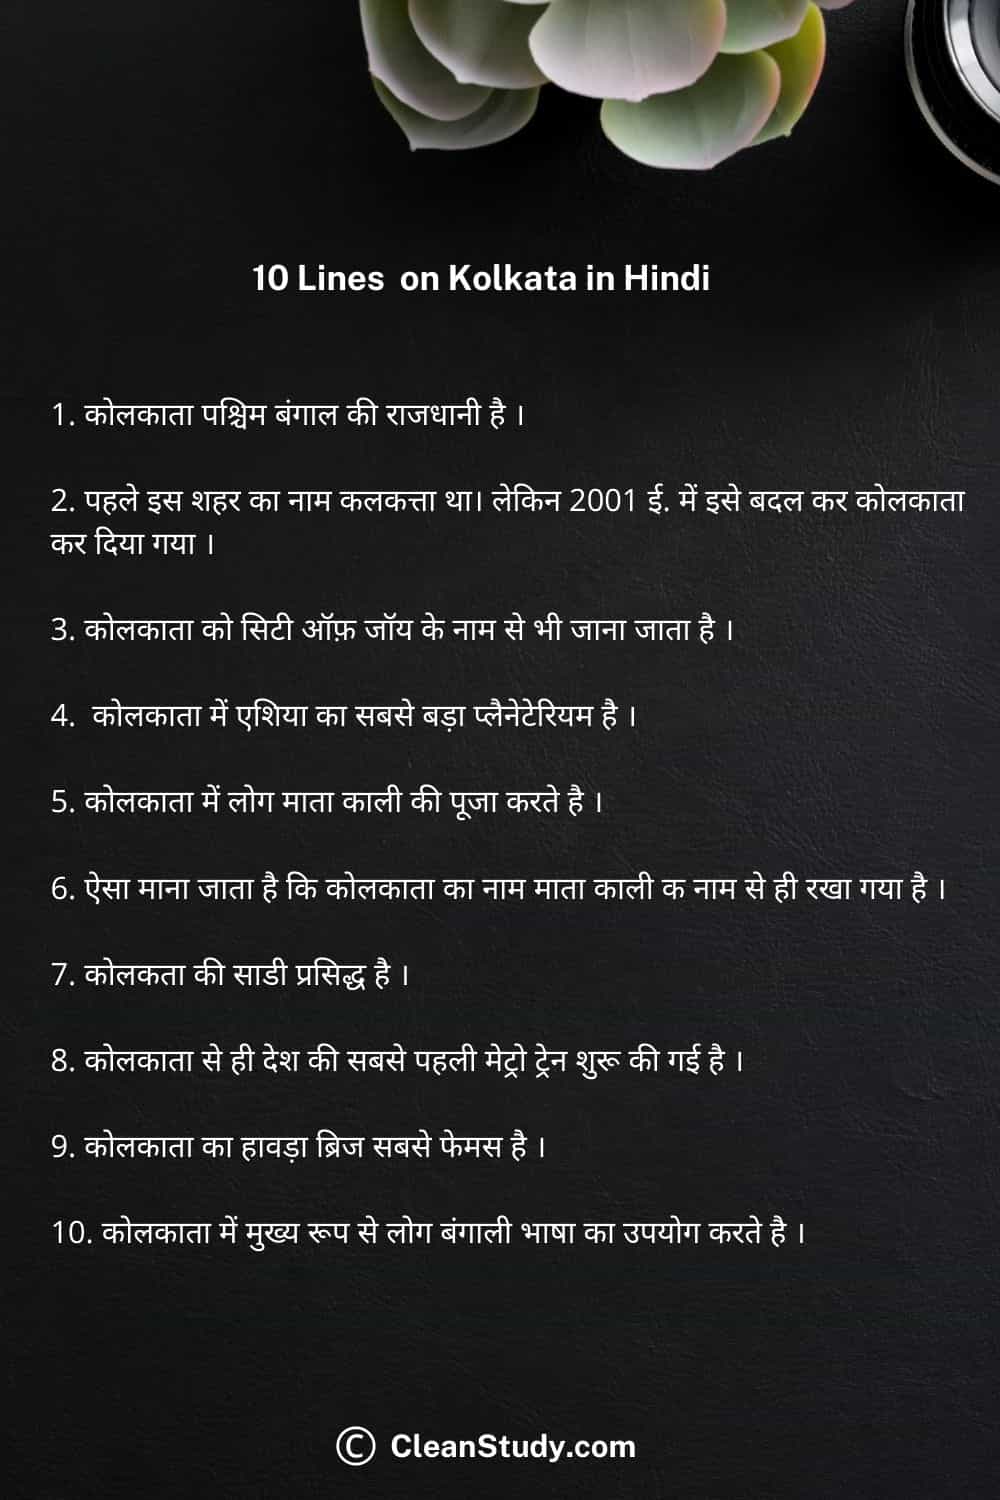 10 Lines on kolkata in hindi